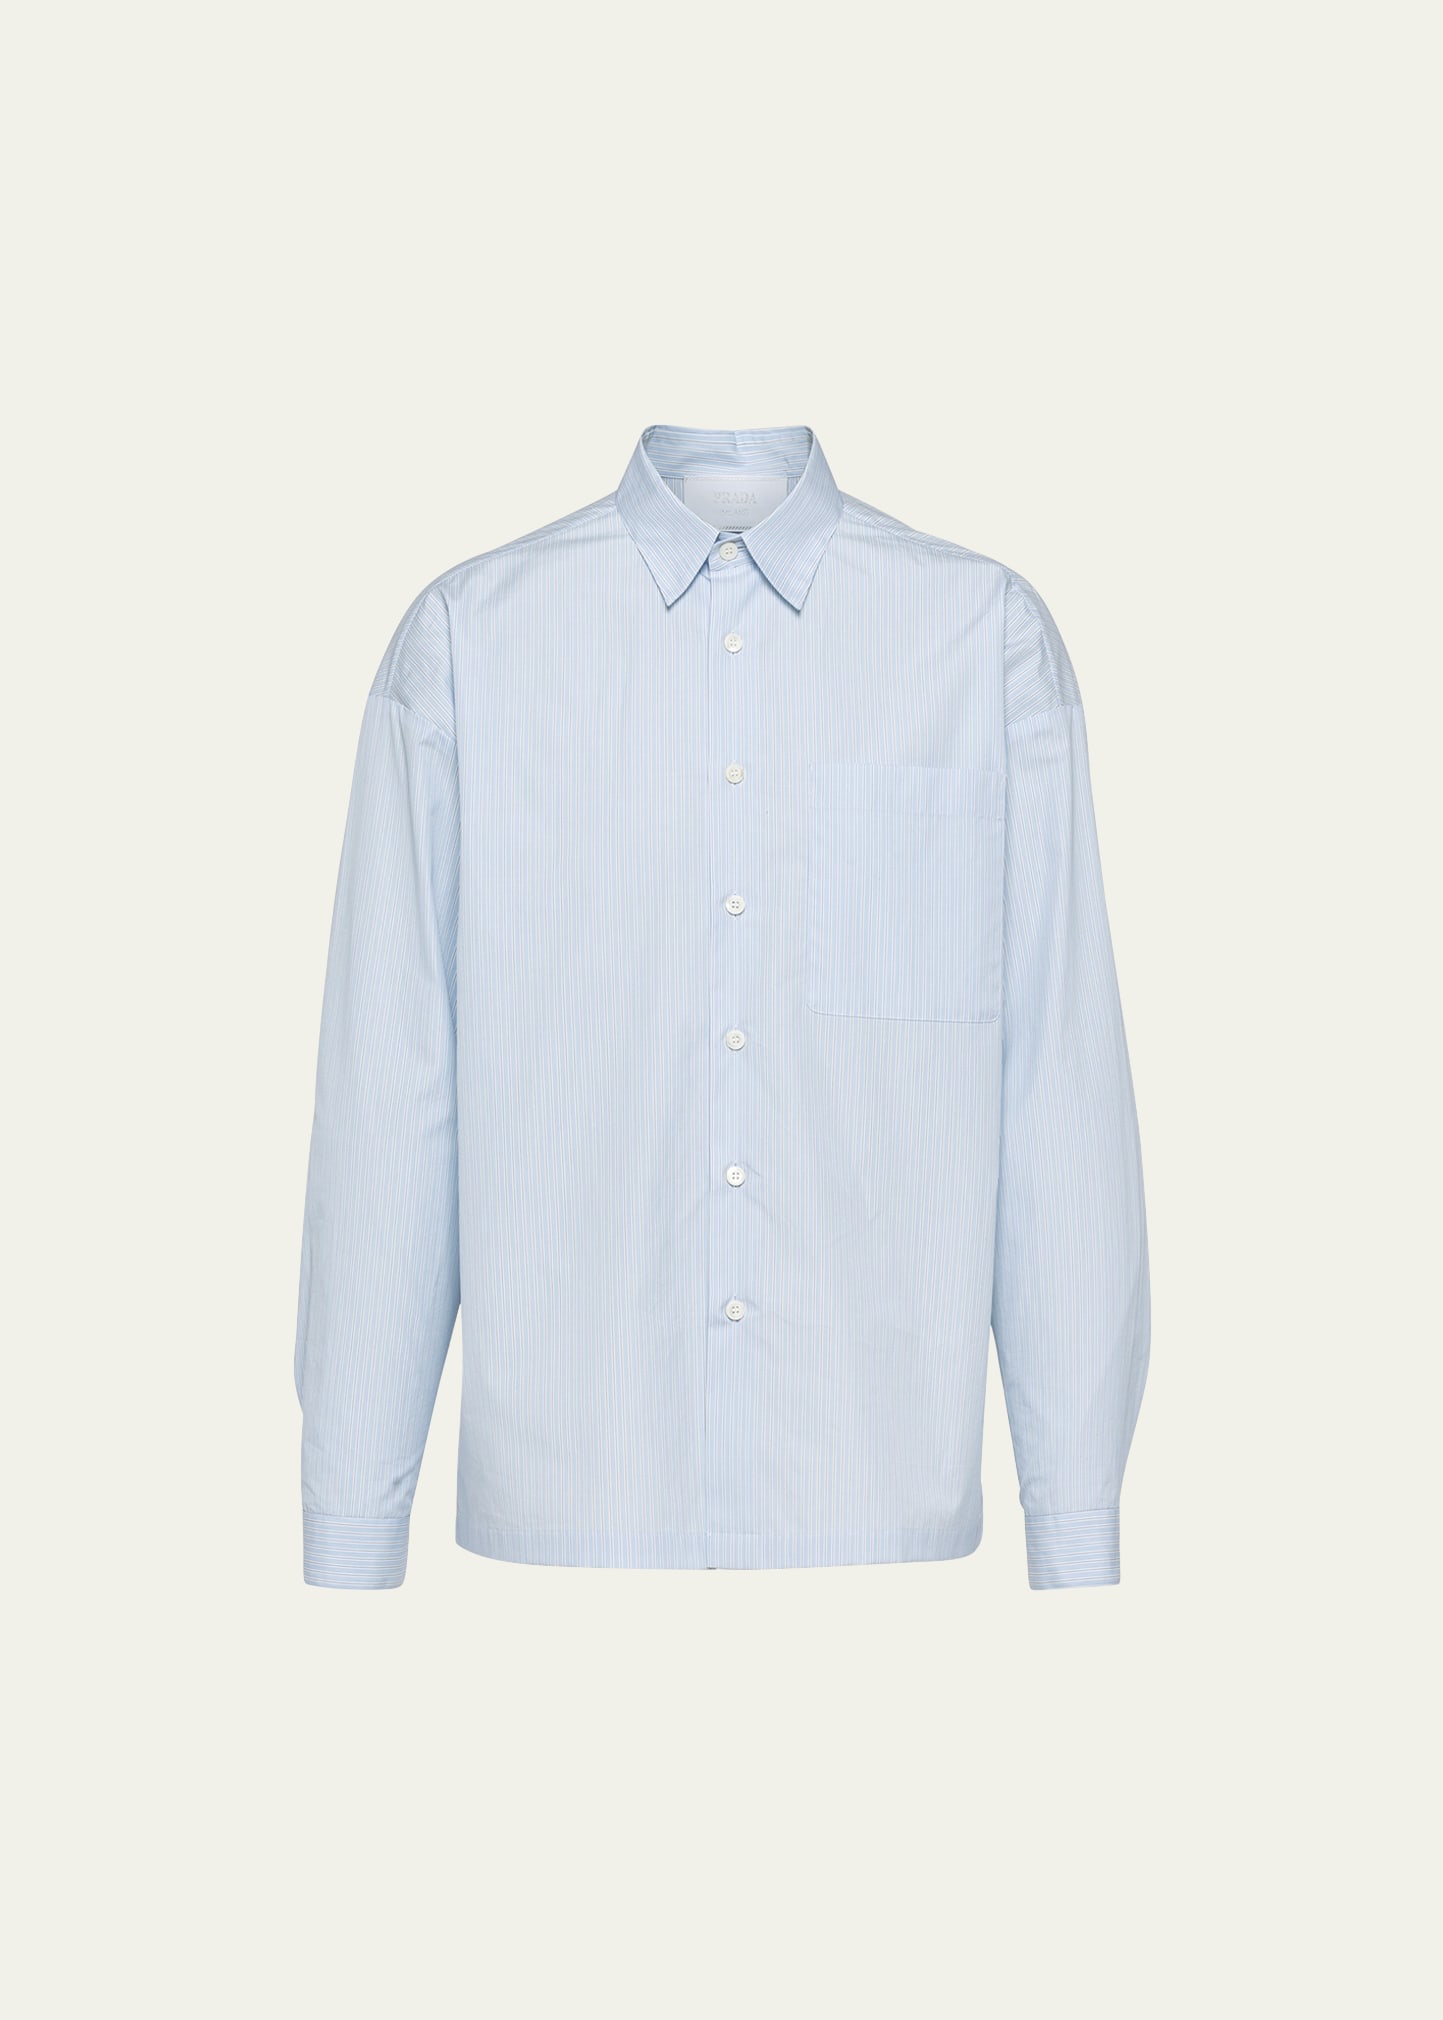 Prada Men's Striped Poplin Sport Shirt In Bianco Cielo Blu